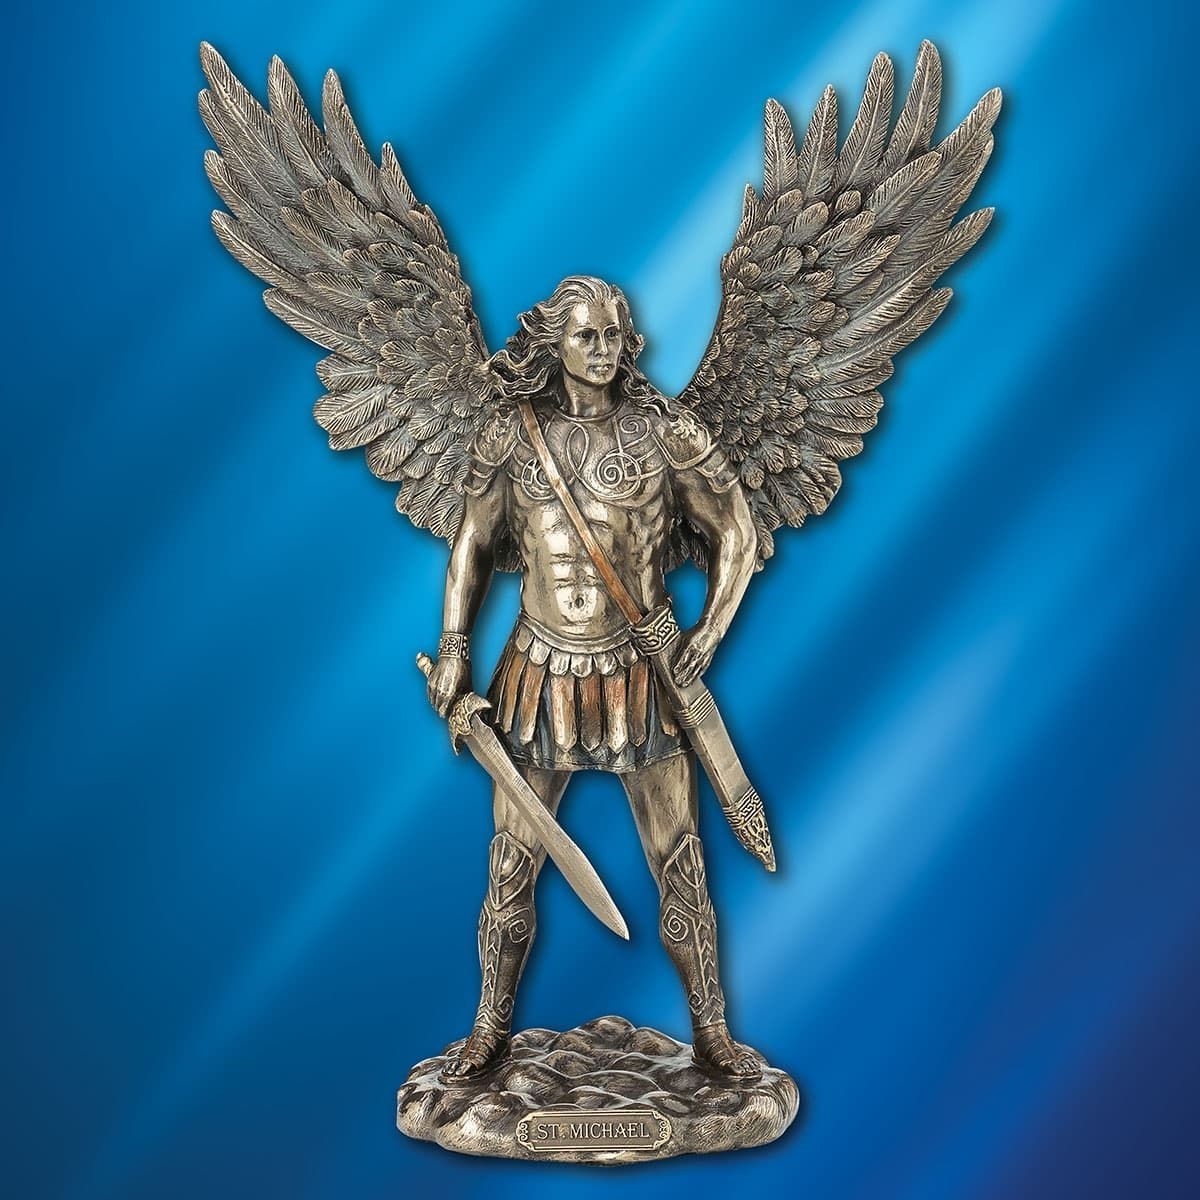 Saint Michael the Archangel Statue - MuseumReplicas.com